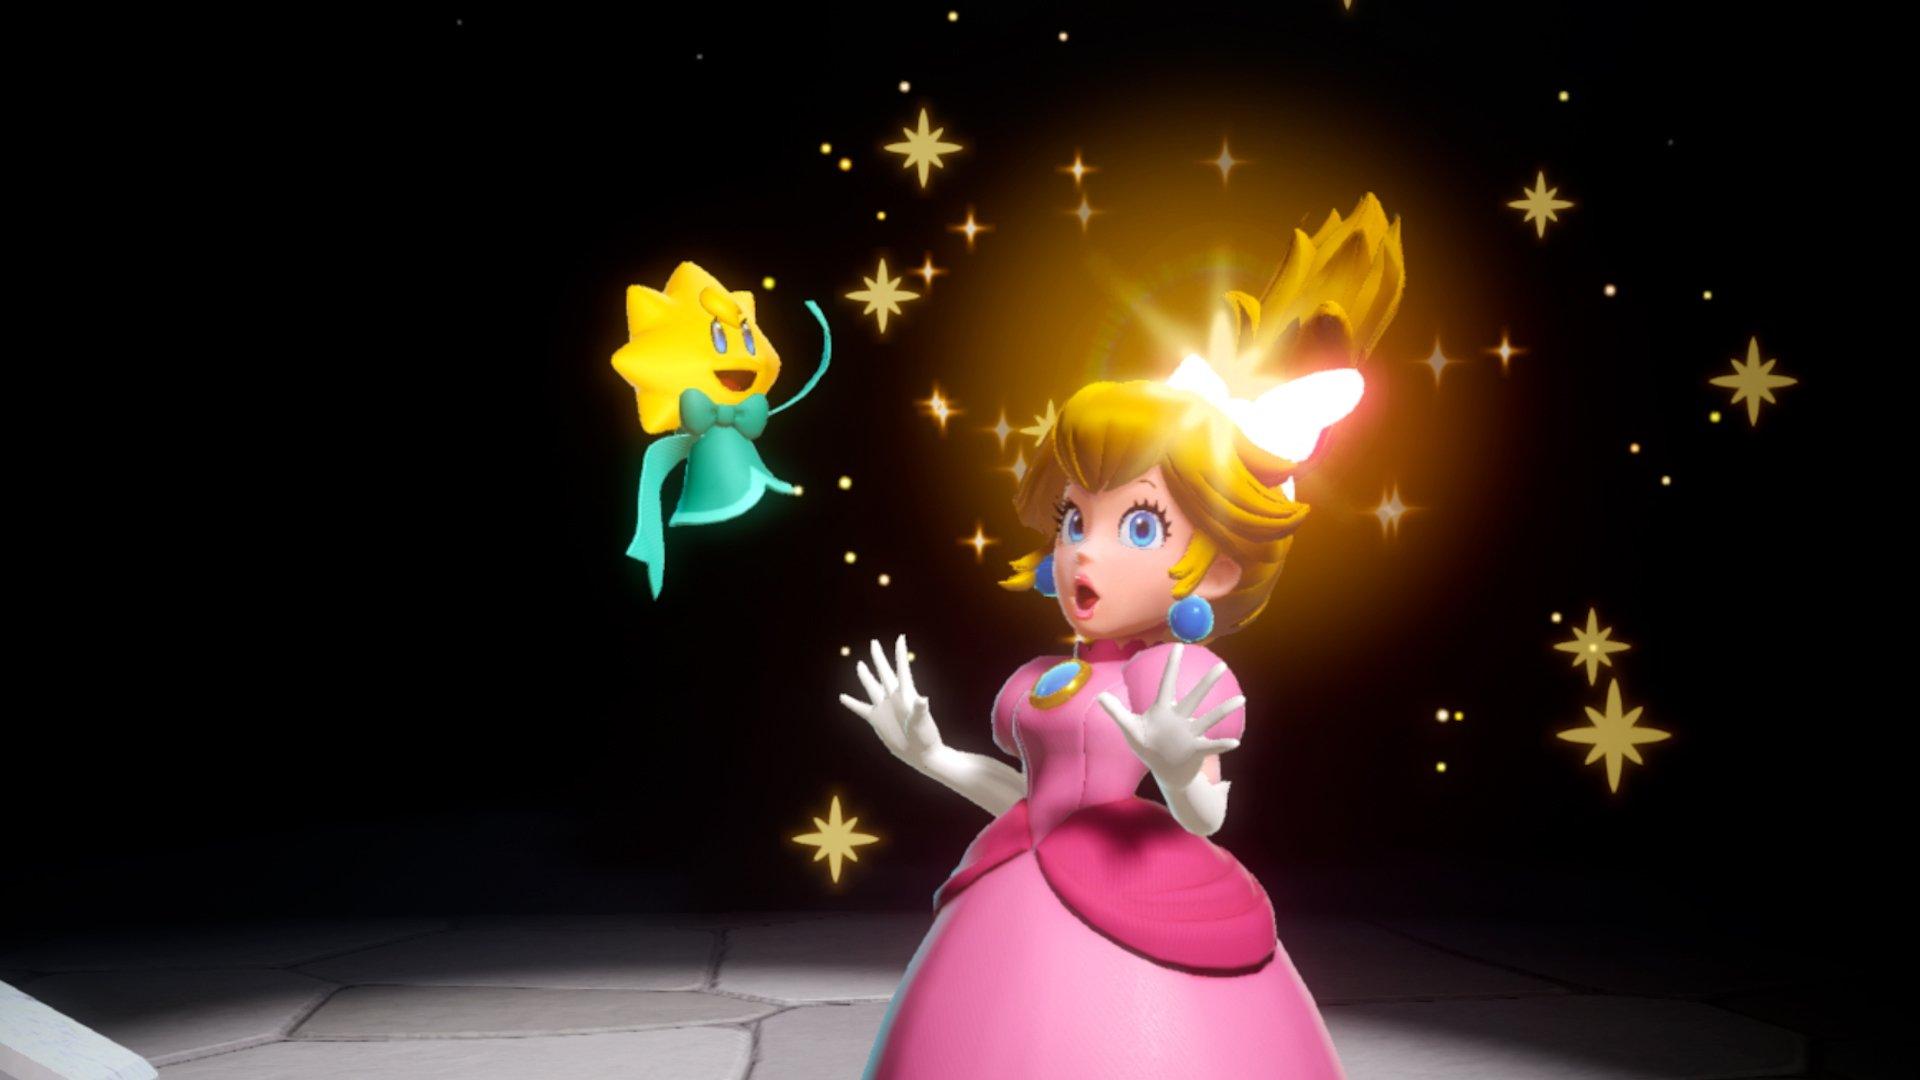 Princess Peach Showtime. Nintendo Switch